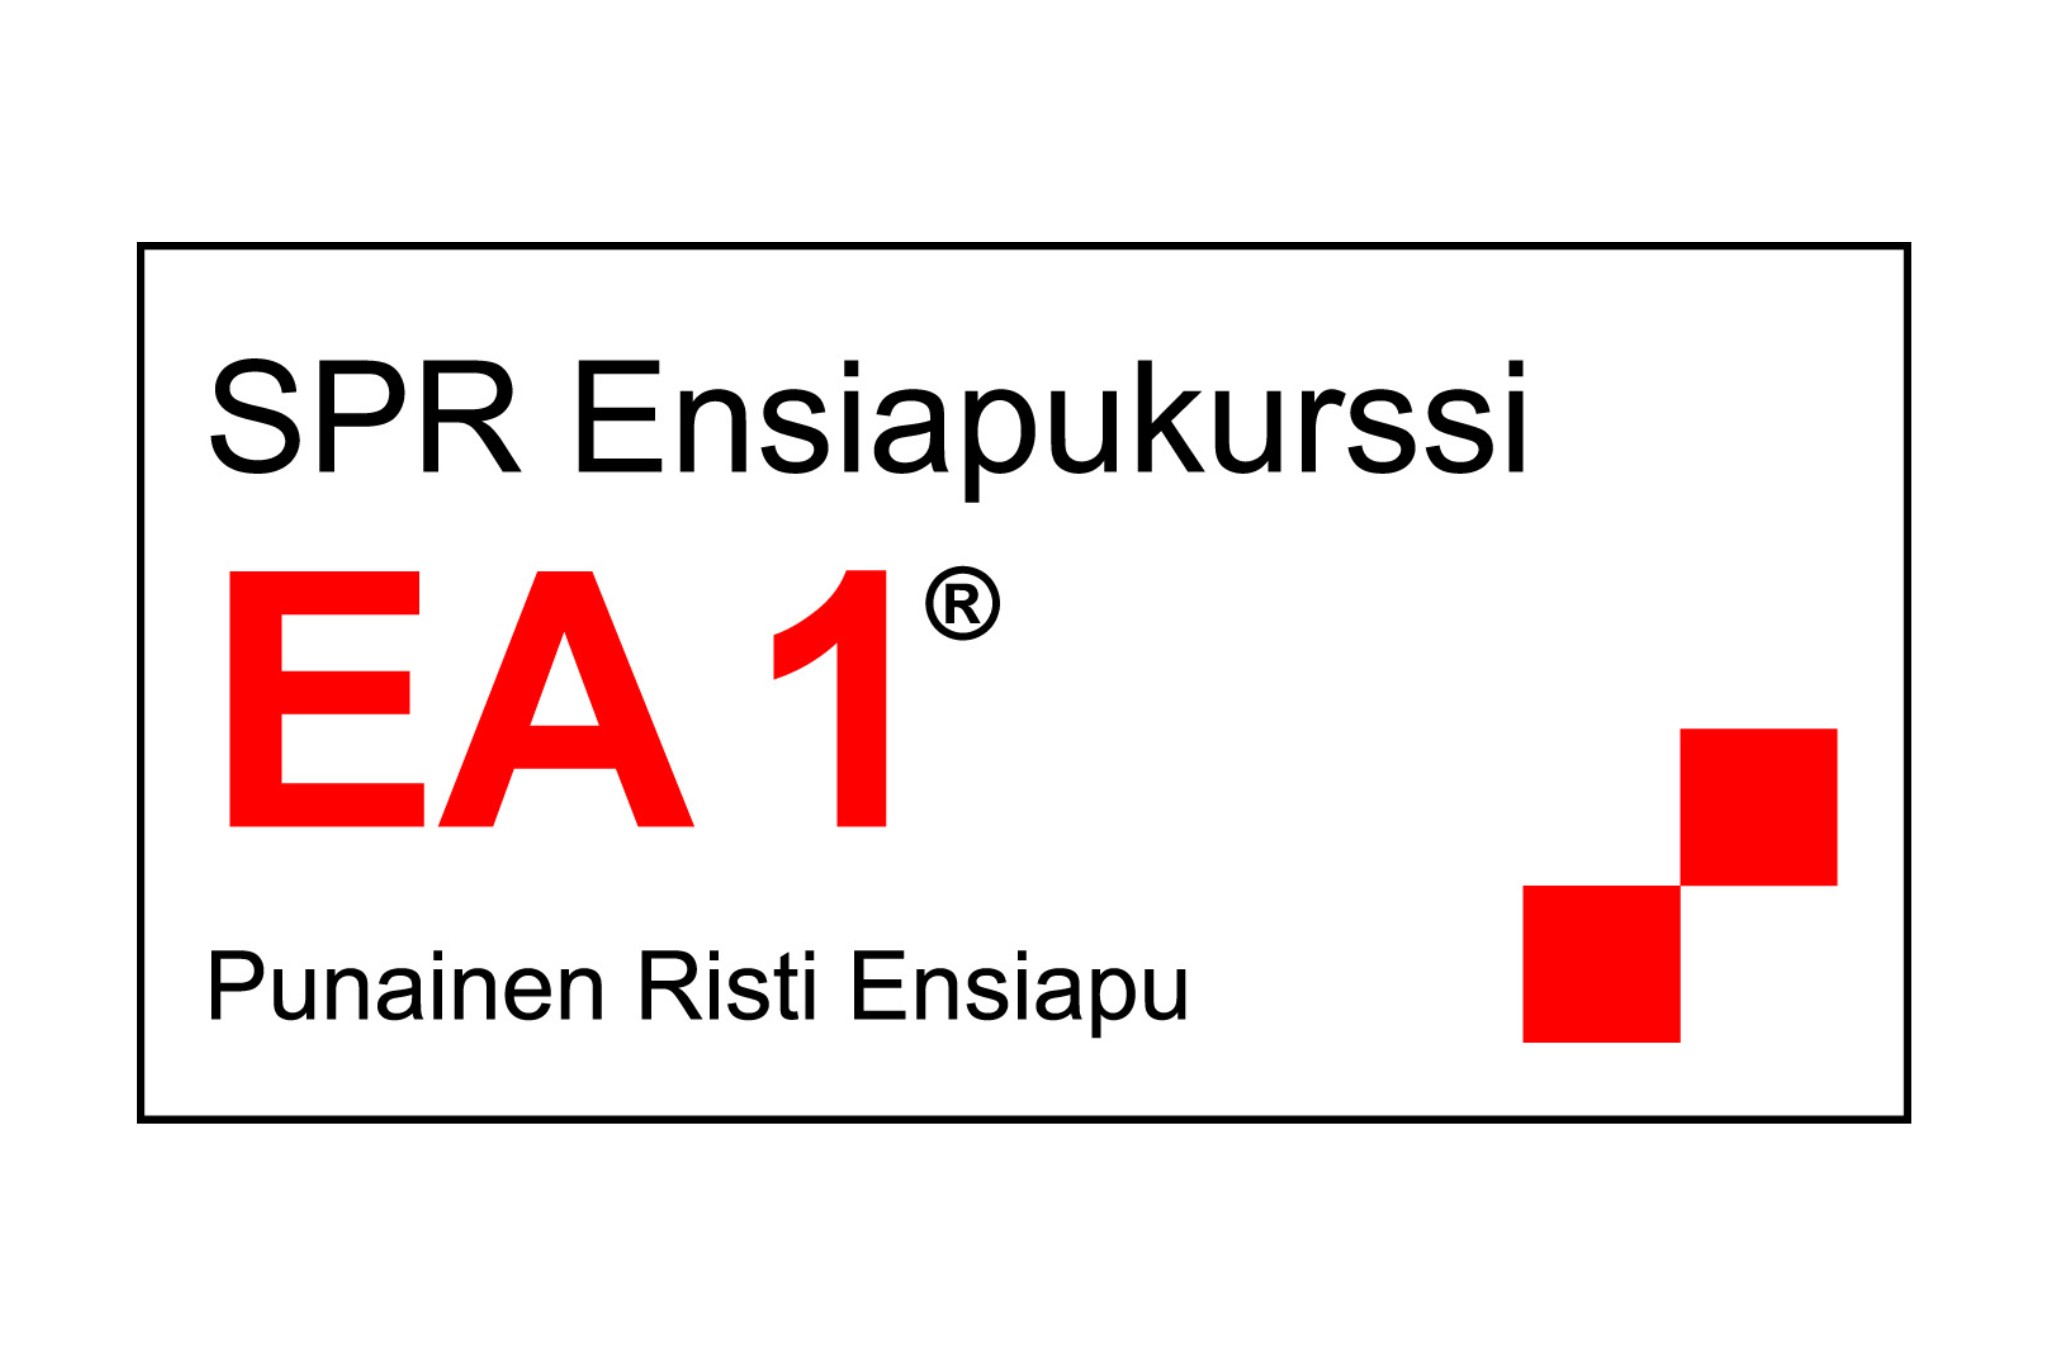 Musta-puna-valkoinen vaakamuotoinen logo SPR Ensiapukurssi EA1® ensiapukoulutuksesta. Logossa oikeassa alakulmassa kaksi punaista laatikkoa elementtinä.